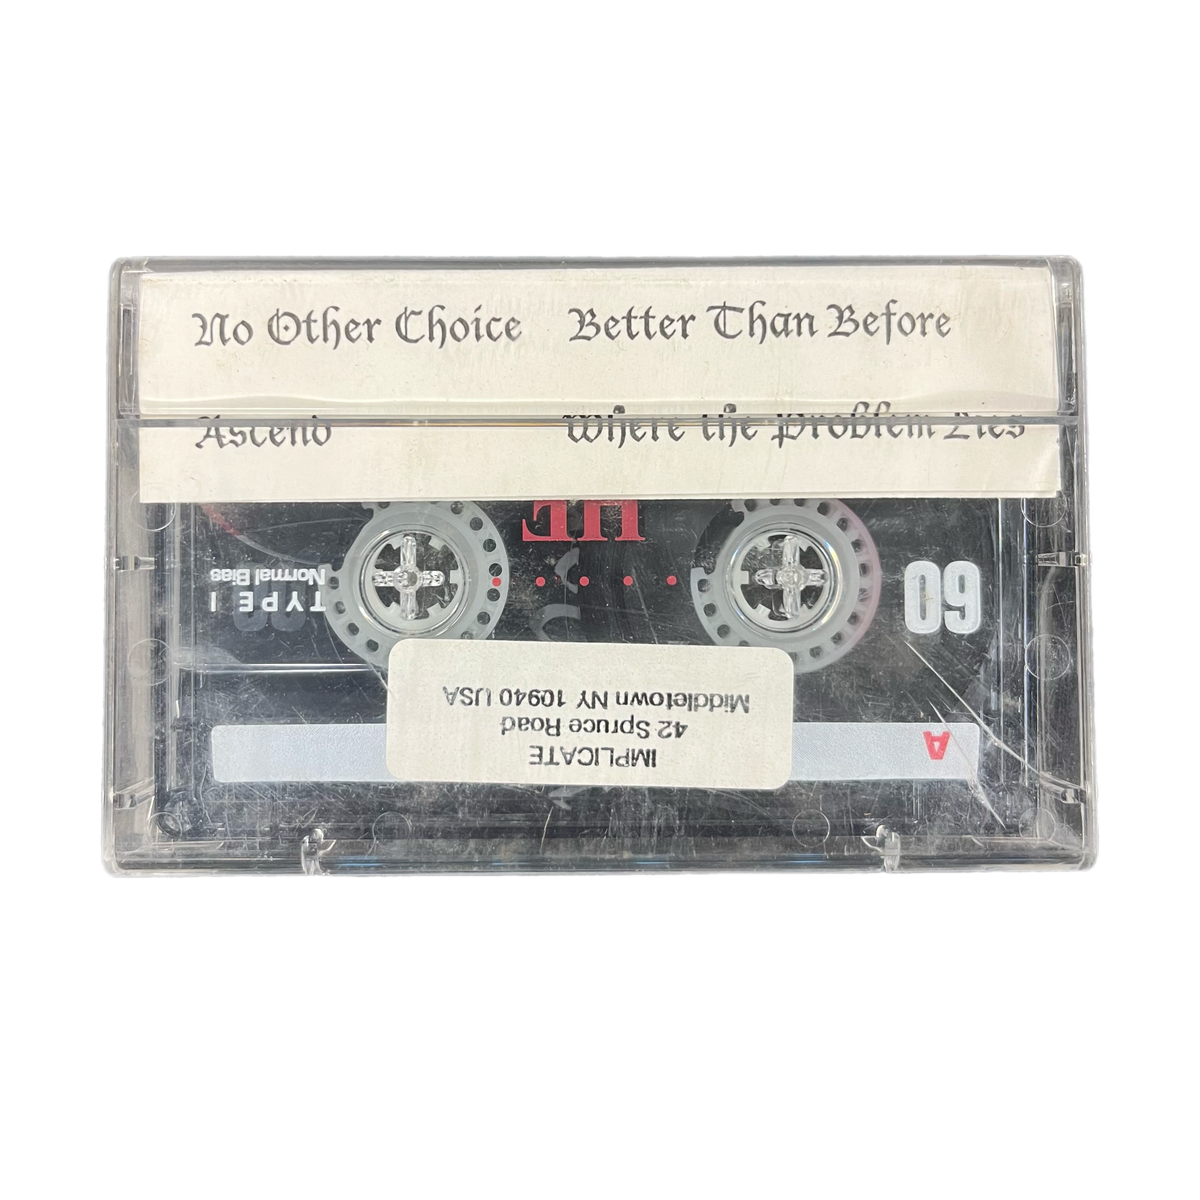 Vintage Implicate &quot;Where The Problem Lies 1999&quot; Cassette Tape